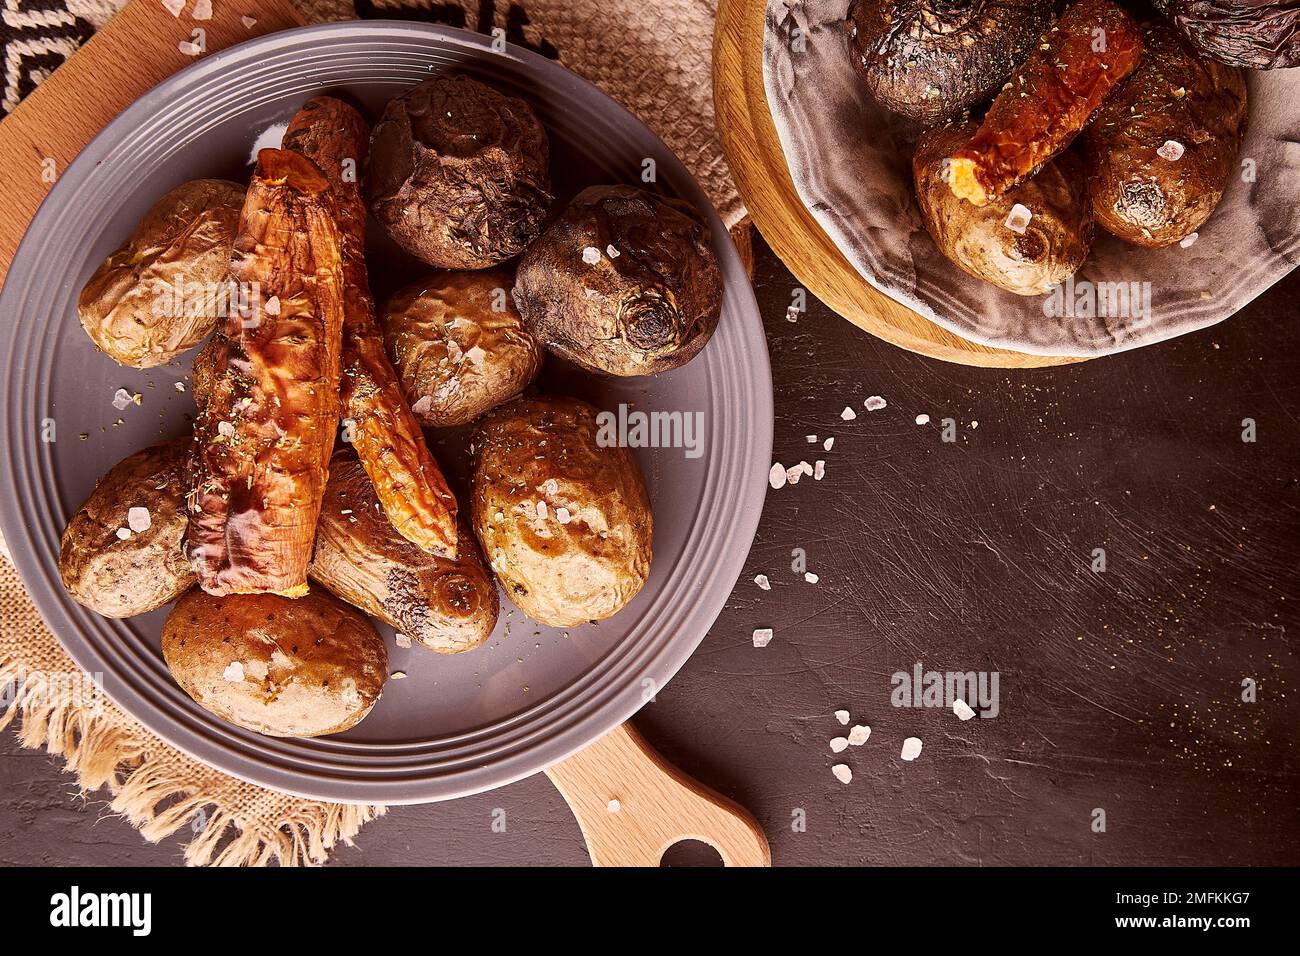 Gegrilltes, rustikales Gemüse - Kartoffeln, Karotten, Rote Bete. Gesundes Essen. Vollkost, DASH, mediterrane Diät auf natürlichem rustikalem Holzhintergrund Stockfoto